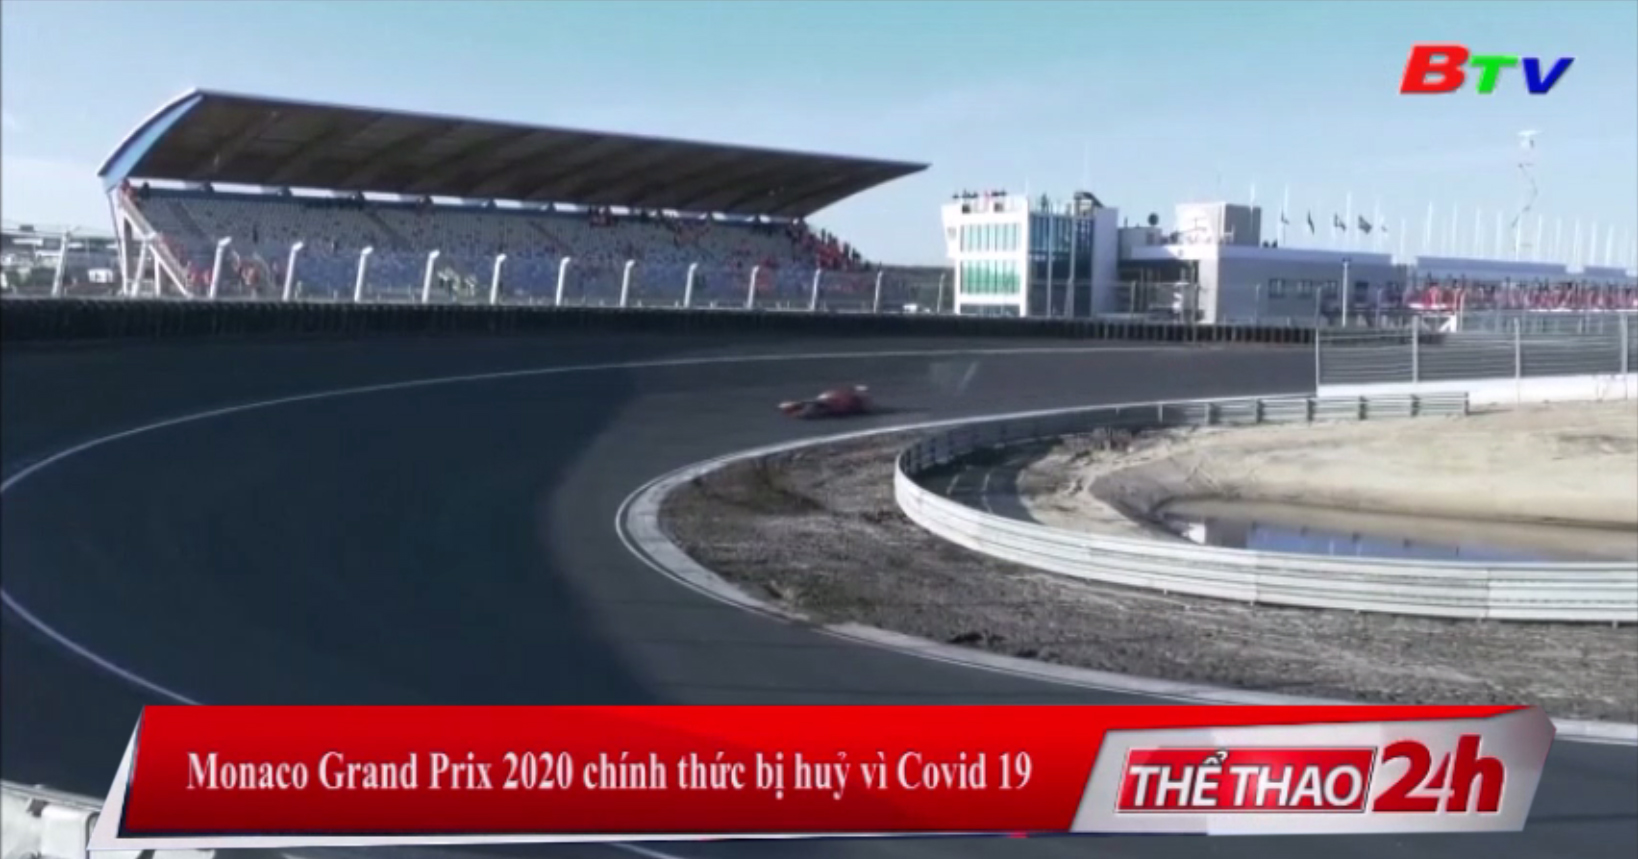 Monaco Grand Prix 2020 chính thức bị hủy vì Covid-19